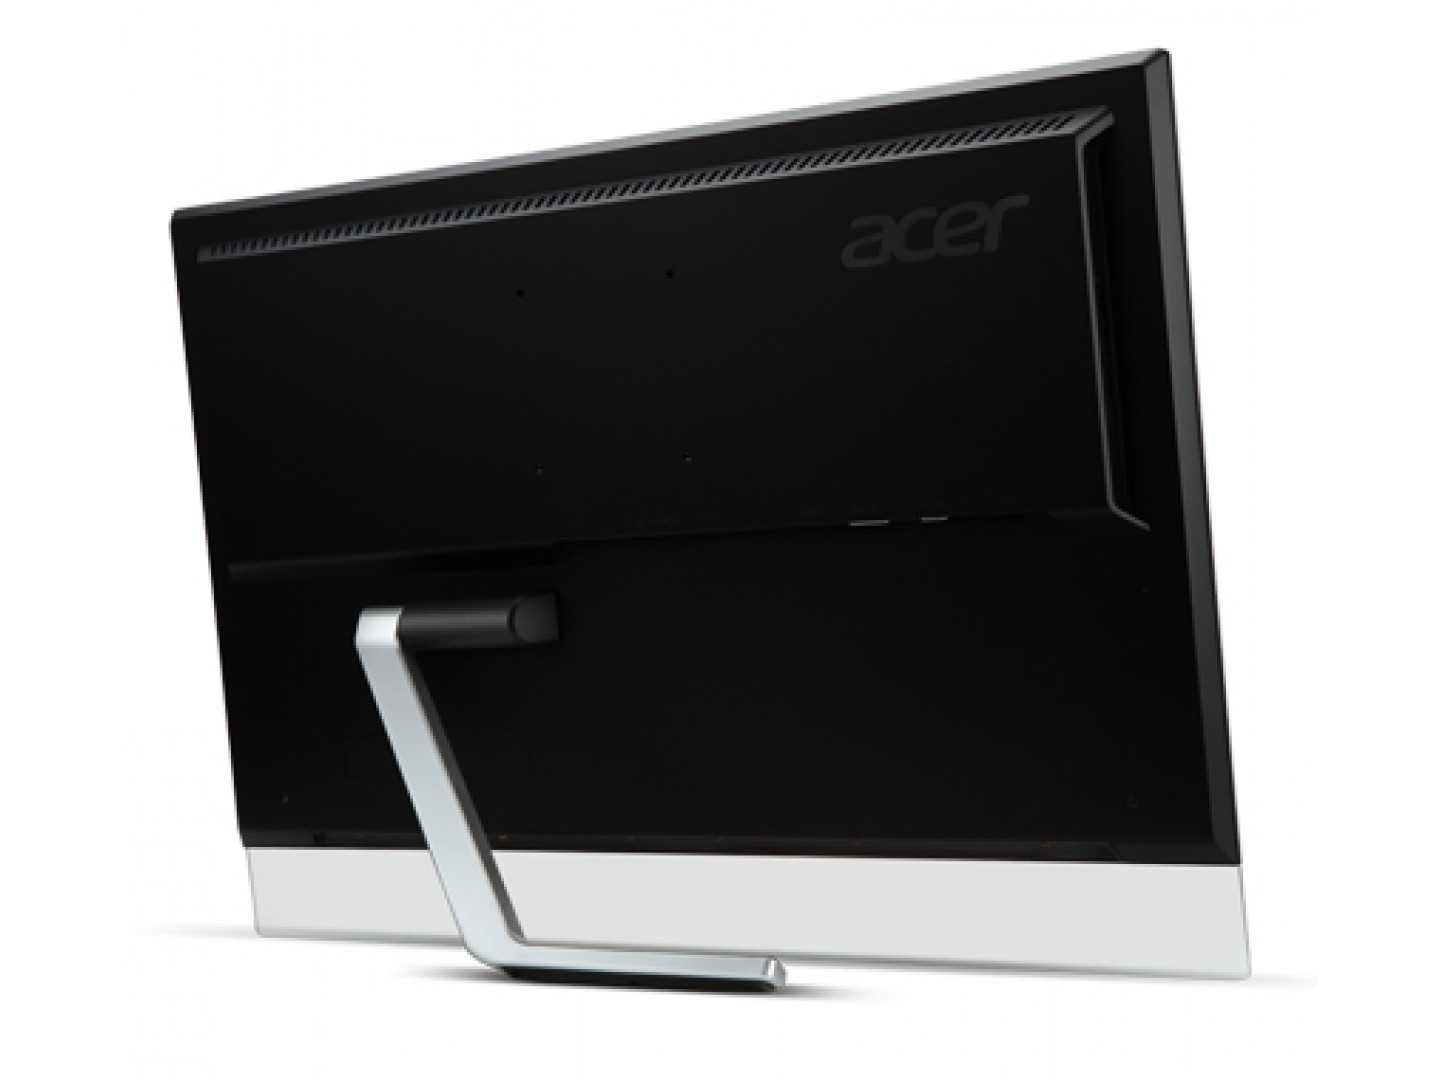 Монитор Acer T272HLbmidz - подробные характеристики обзоры видео фото Цены в интернет-магазинах где можно купить монитор Acer T272HLbmidz